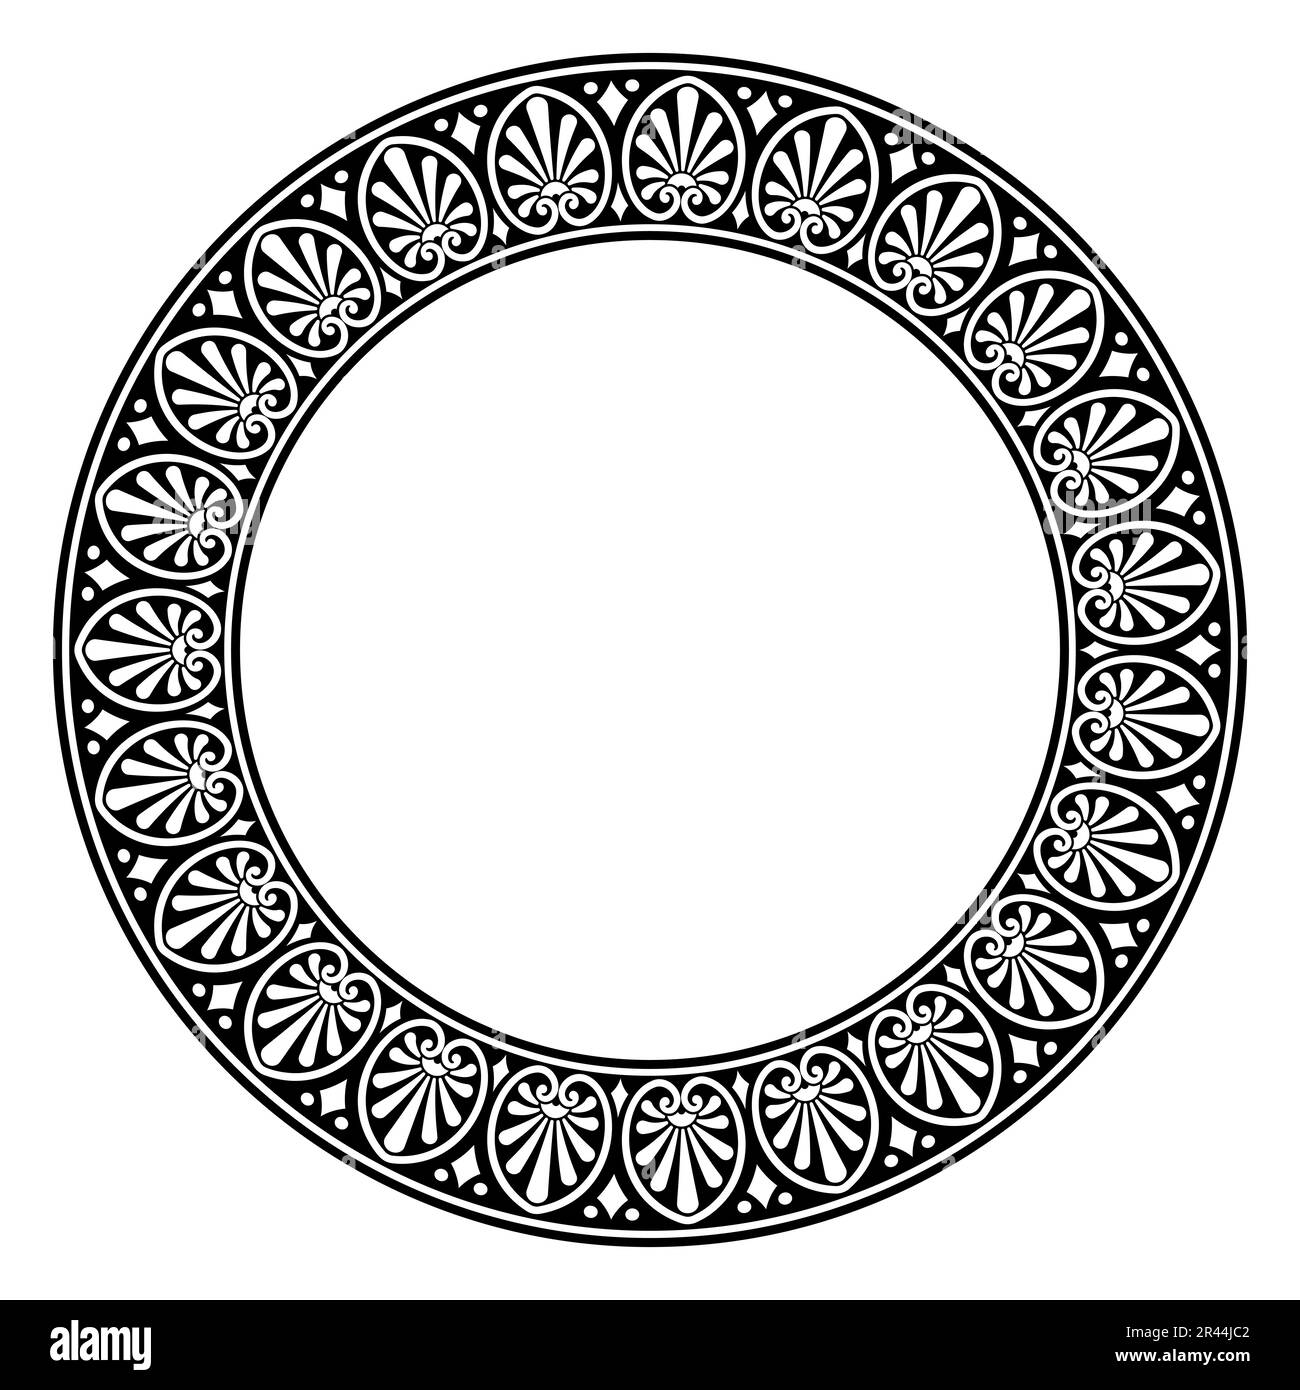 Feuillage classique, cadre circulaire avec motif grec classique. Bordure circulaire décorative, composée d'un motif de feuilles conventionnel répété. Banque D'Images